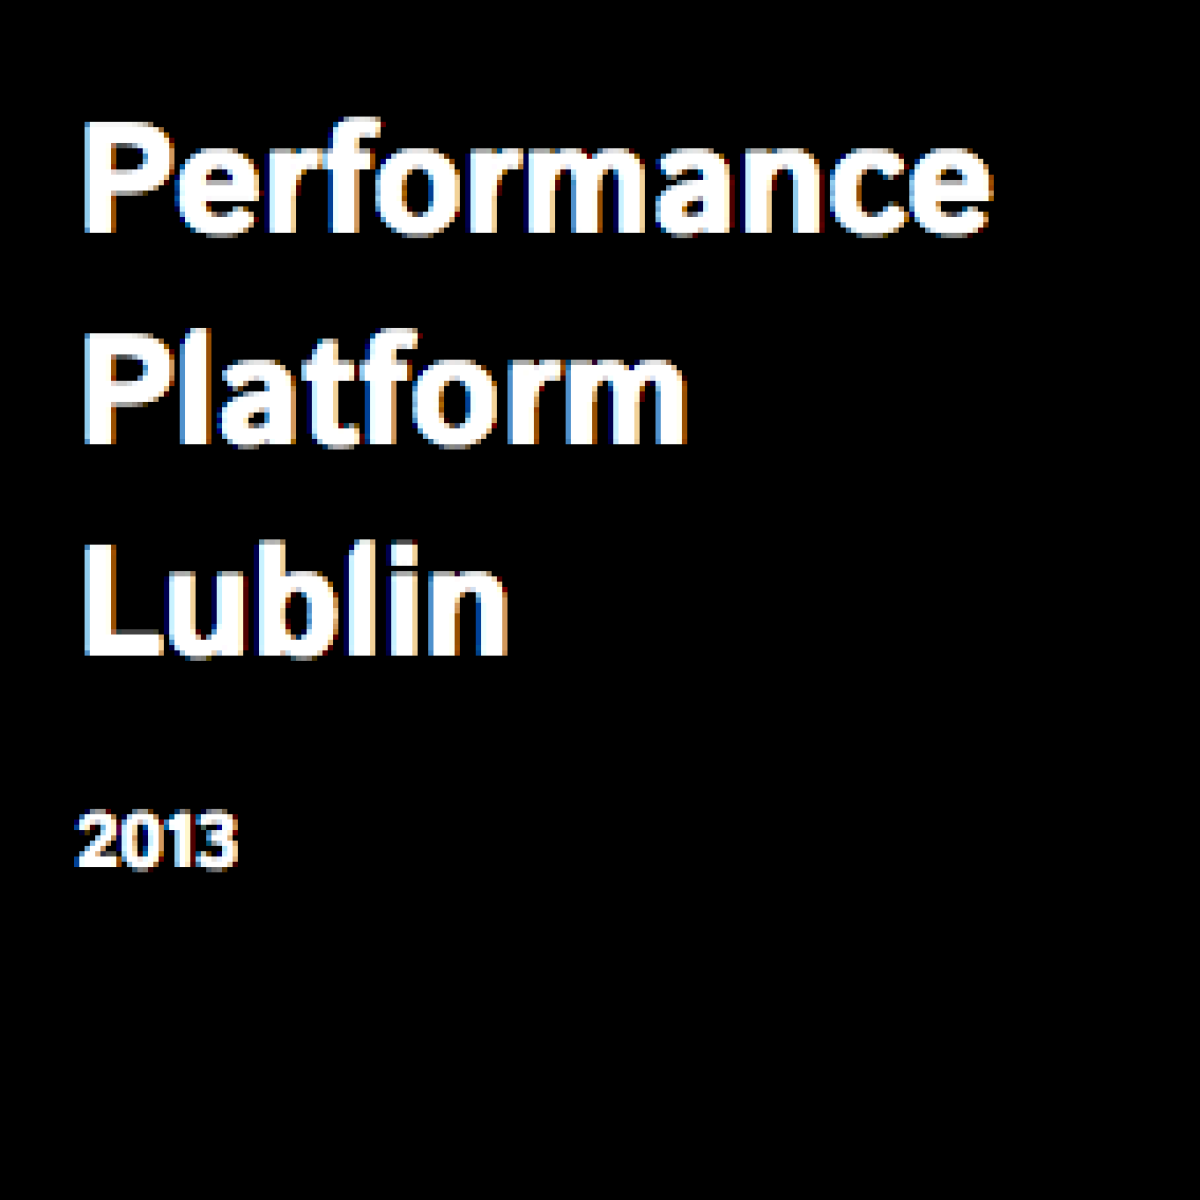 Fundacja Sztuki Performance zaprasza młodych artystów, którzy nie ukończyli 35 roku życia, do składania propozycji performances w ramach programu V edycji festiwalu Performance Platform Lublin.